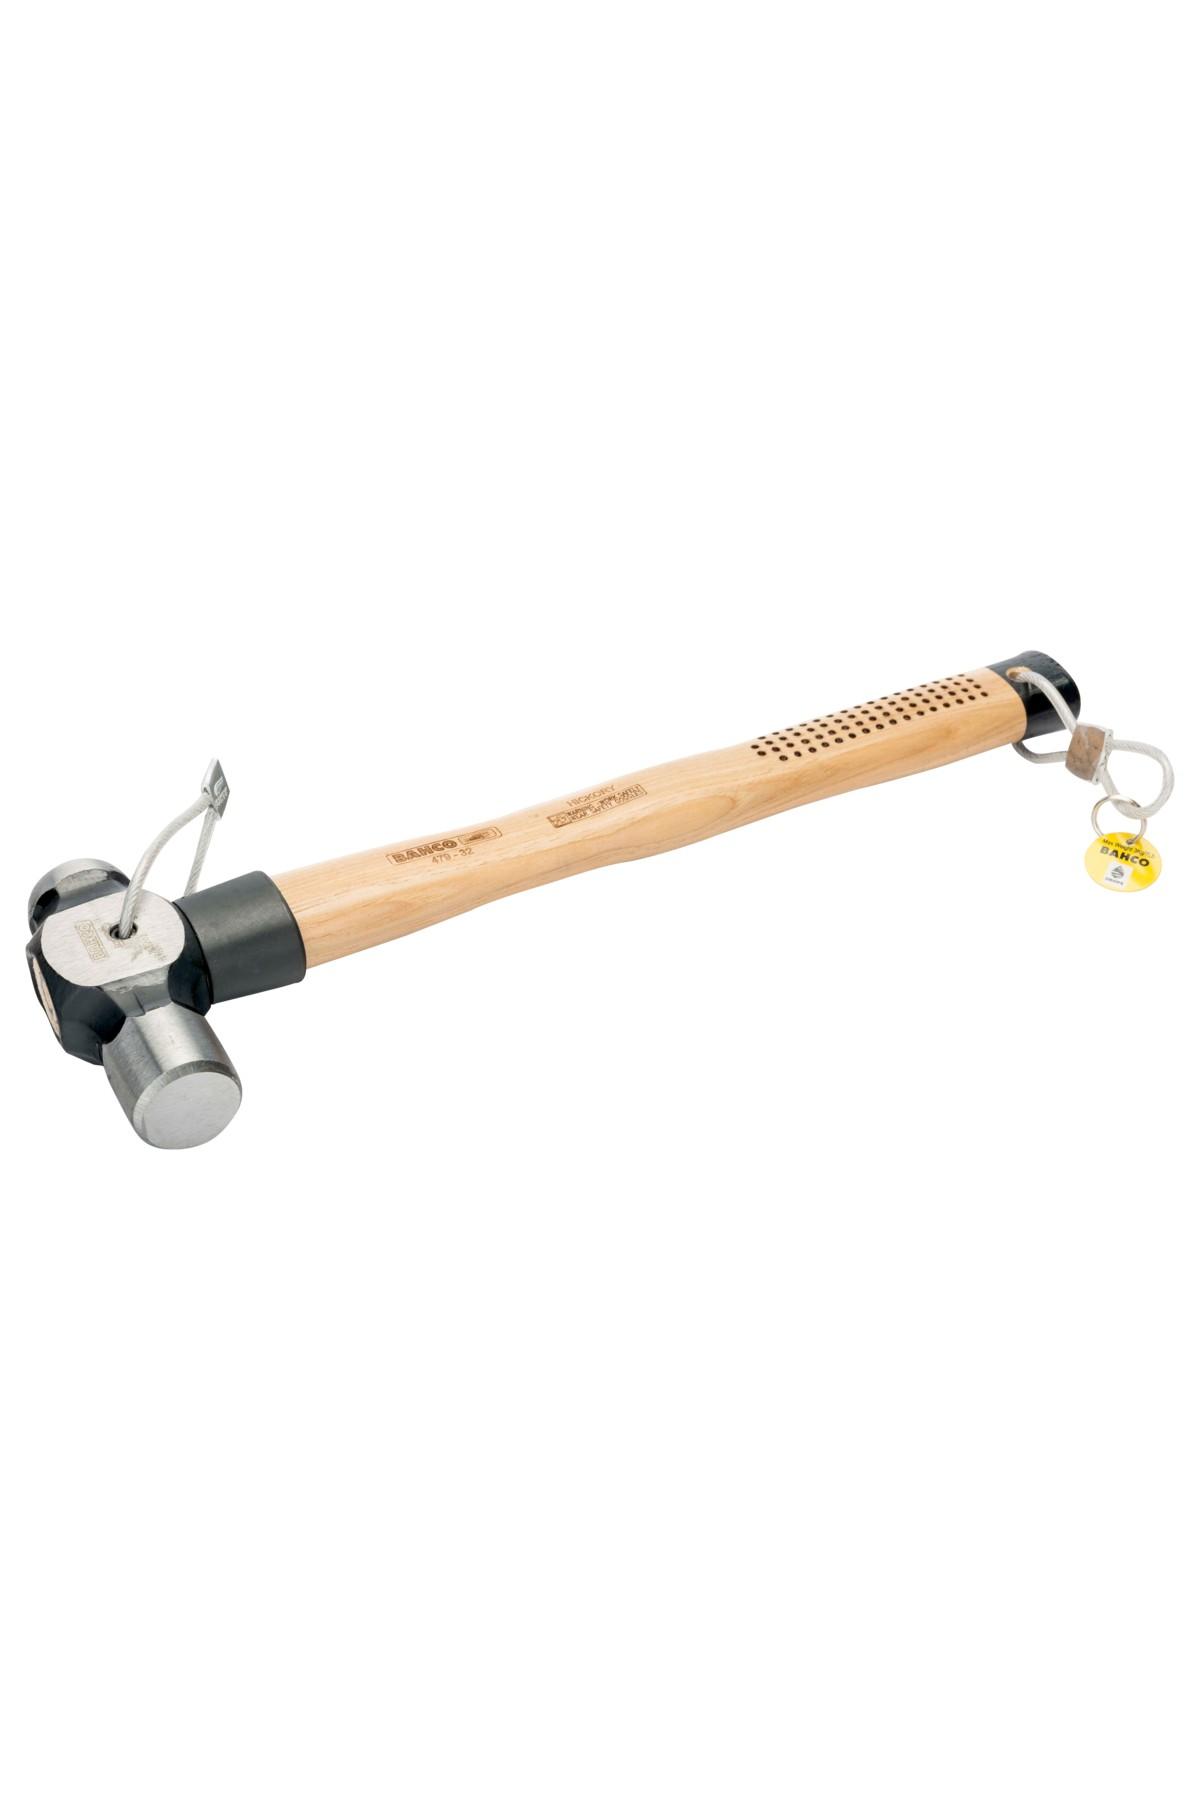 Ball pen hammer 480g height-secured